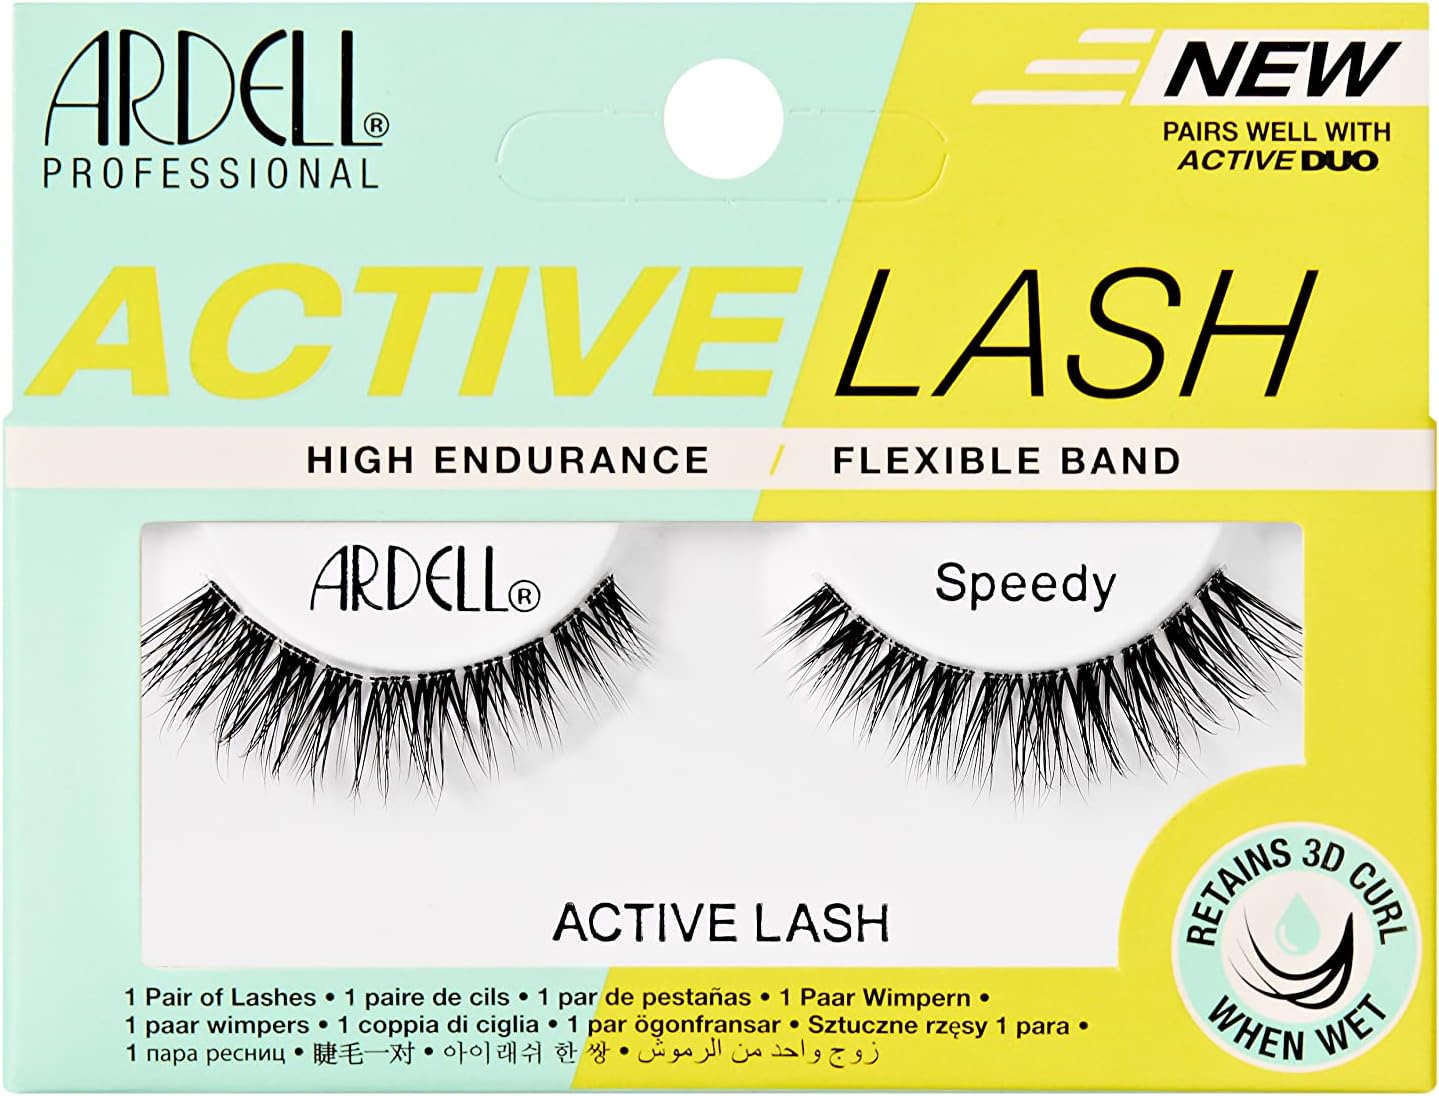 Ardell Active Lash Speedy False Eyelashes, Water-resistant, Light Volume, Short Length, Vegan Friendly, 1 Pair (Pack of 1)